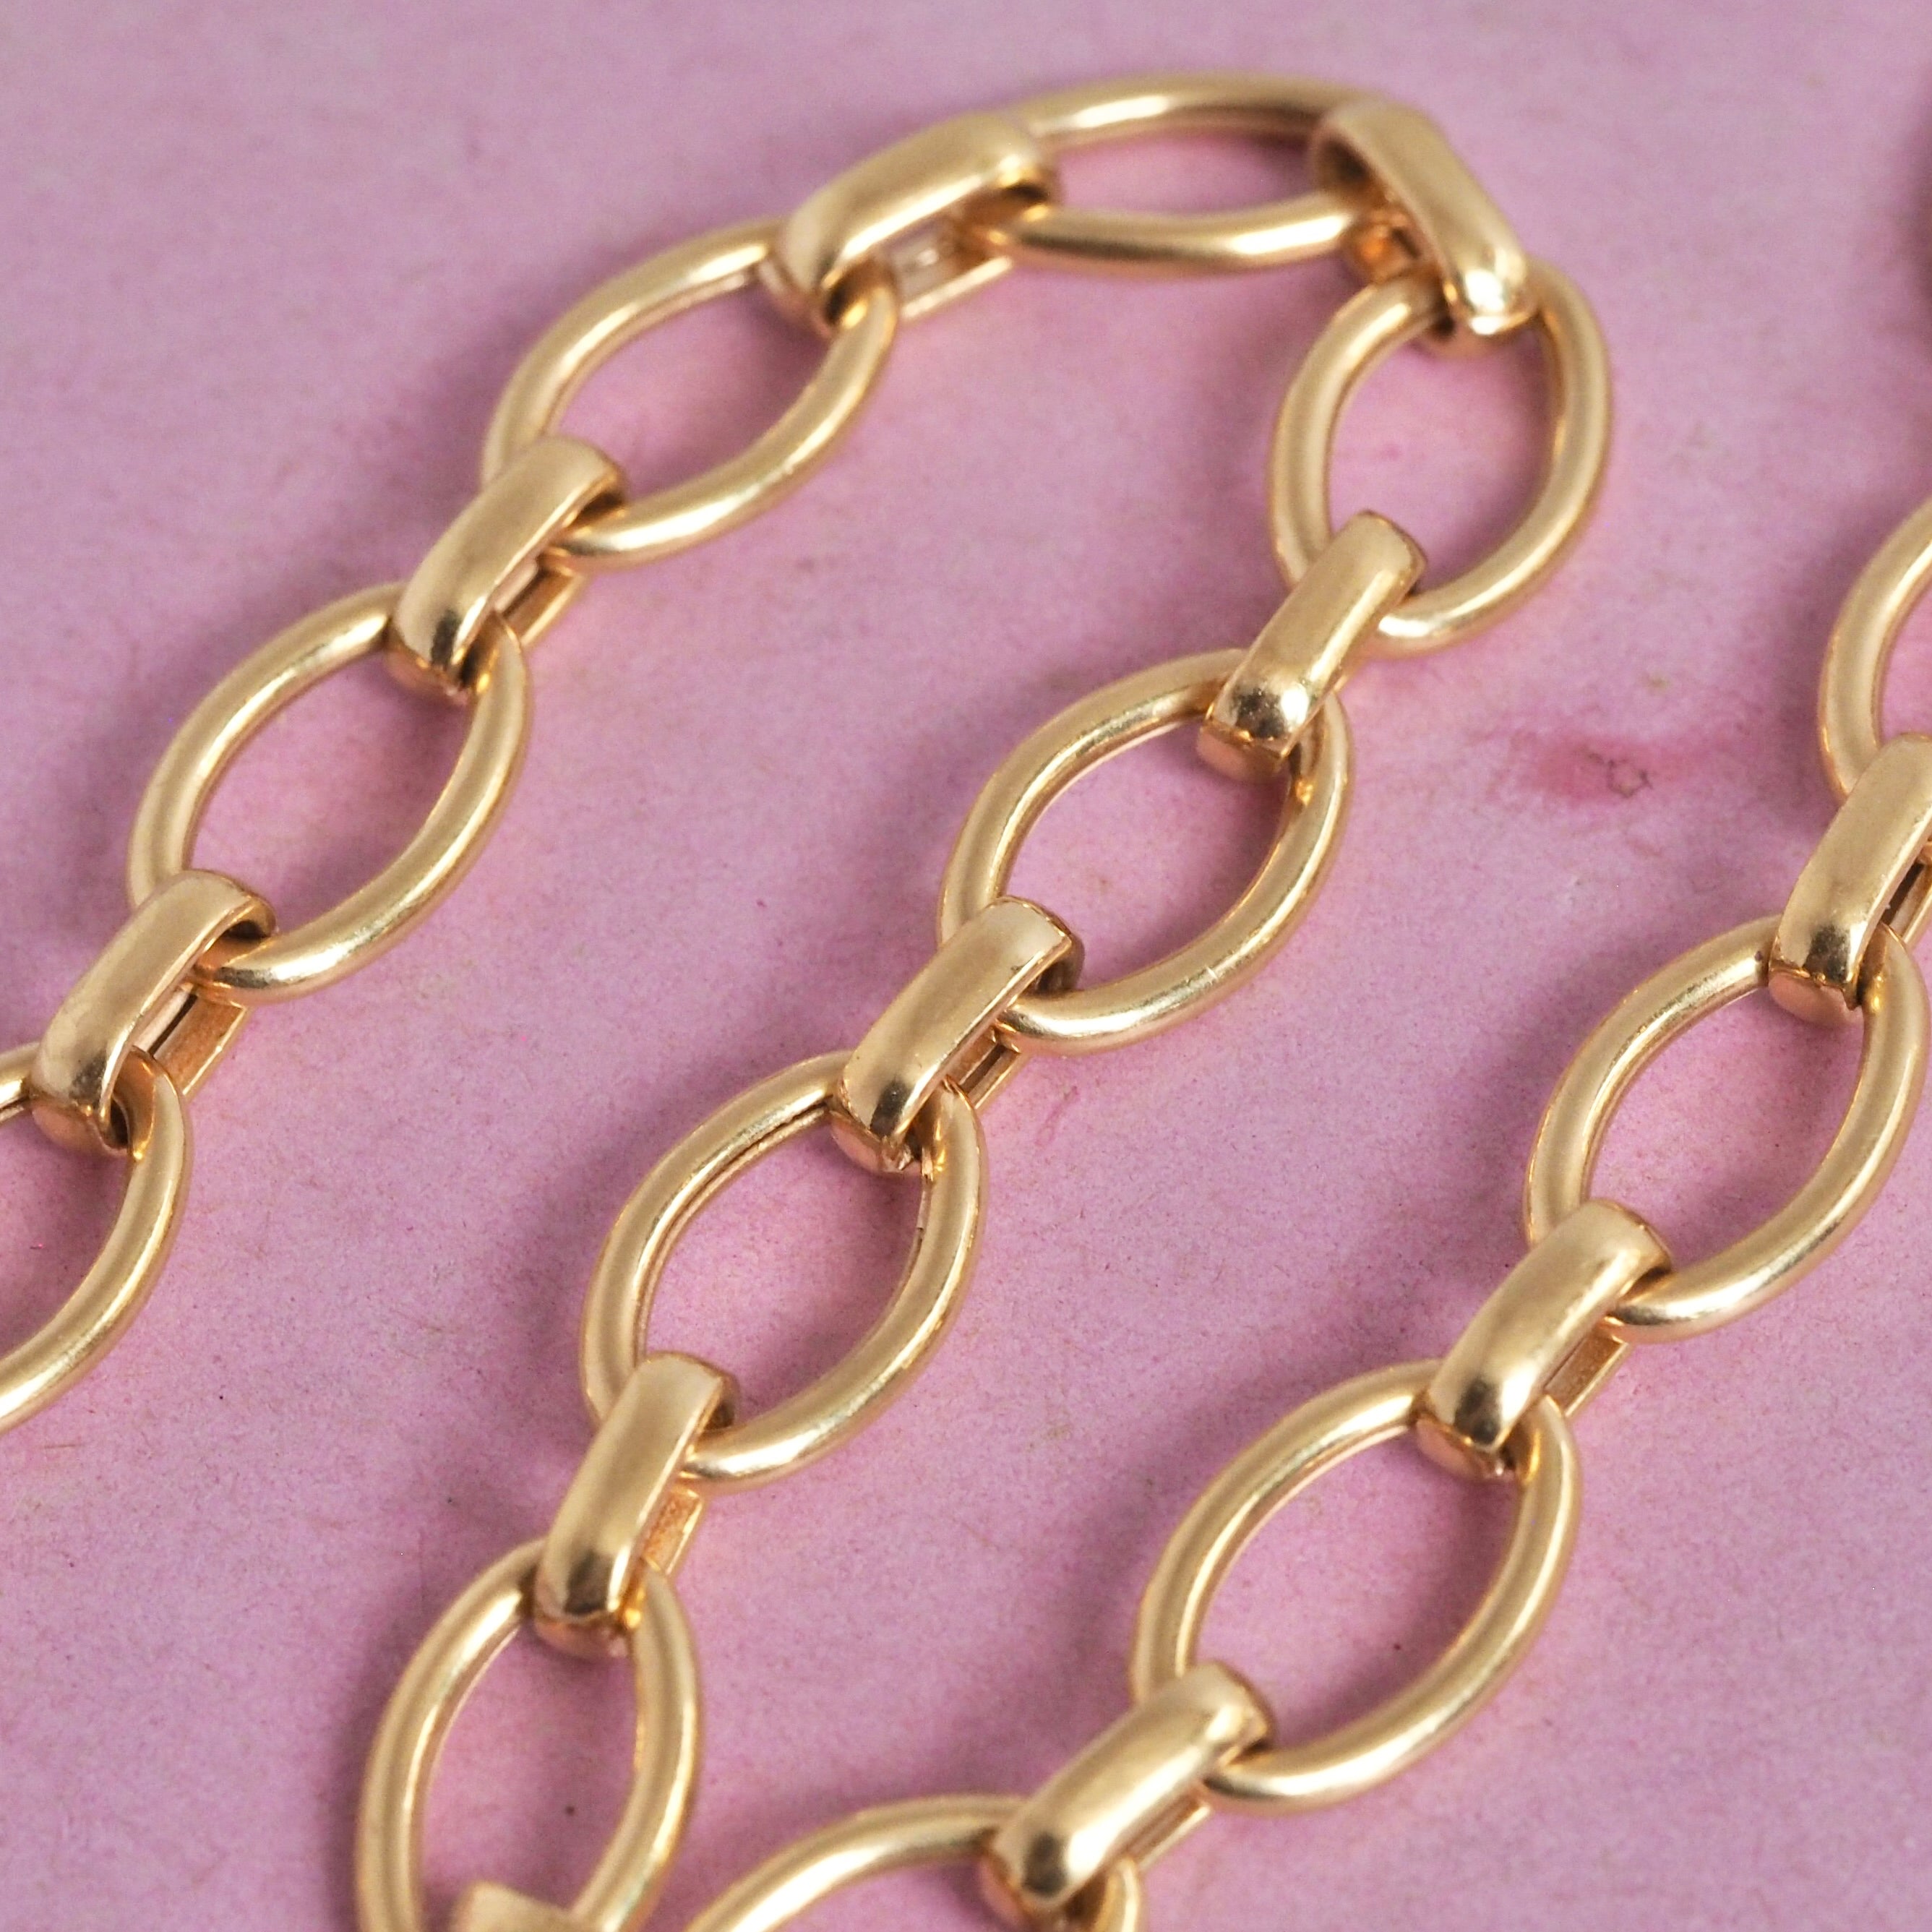 Vintage Portuguese 19k Gold Oval Link Chain Bracelet